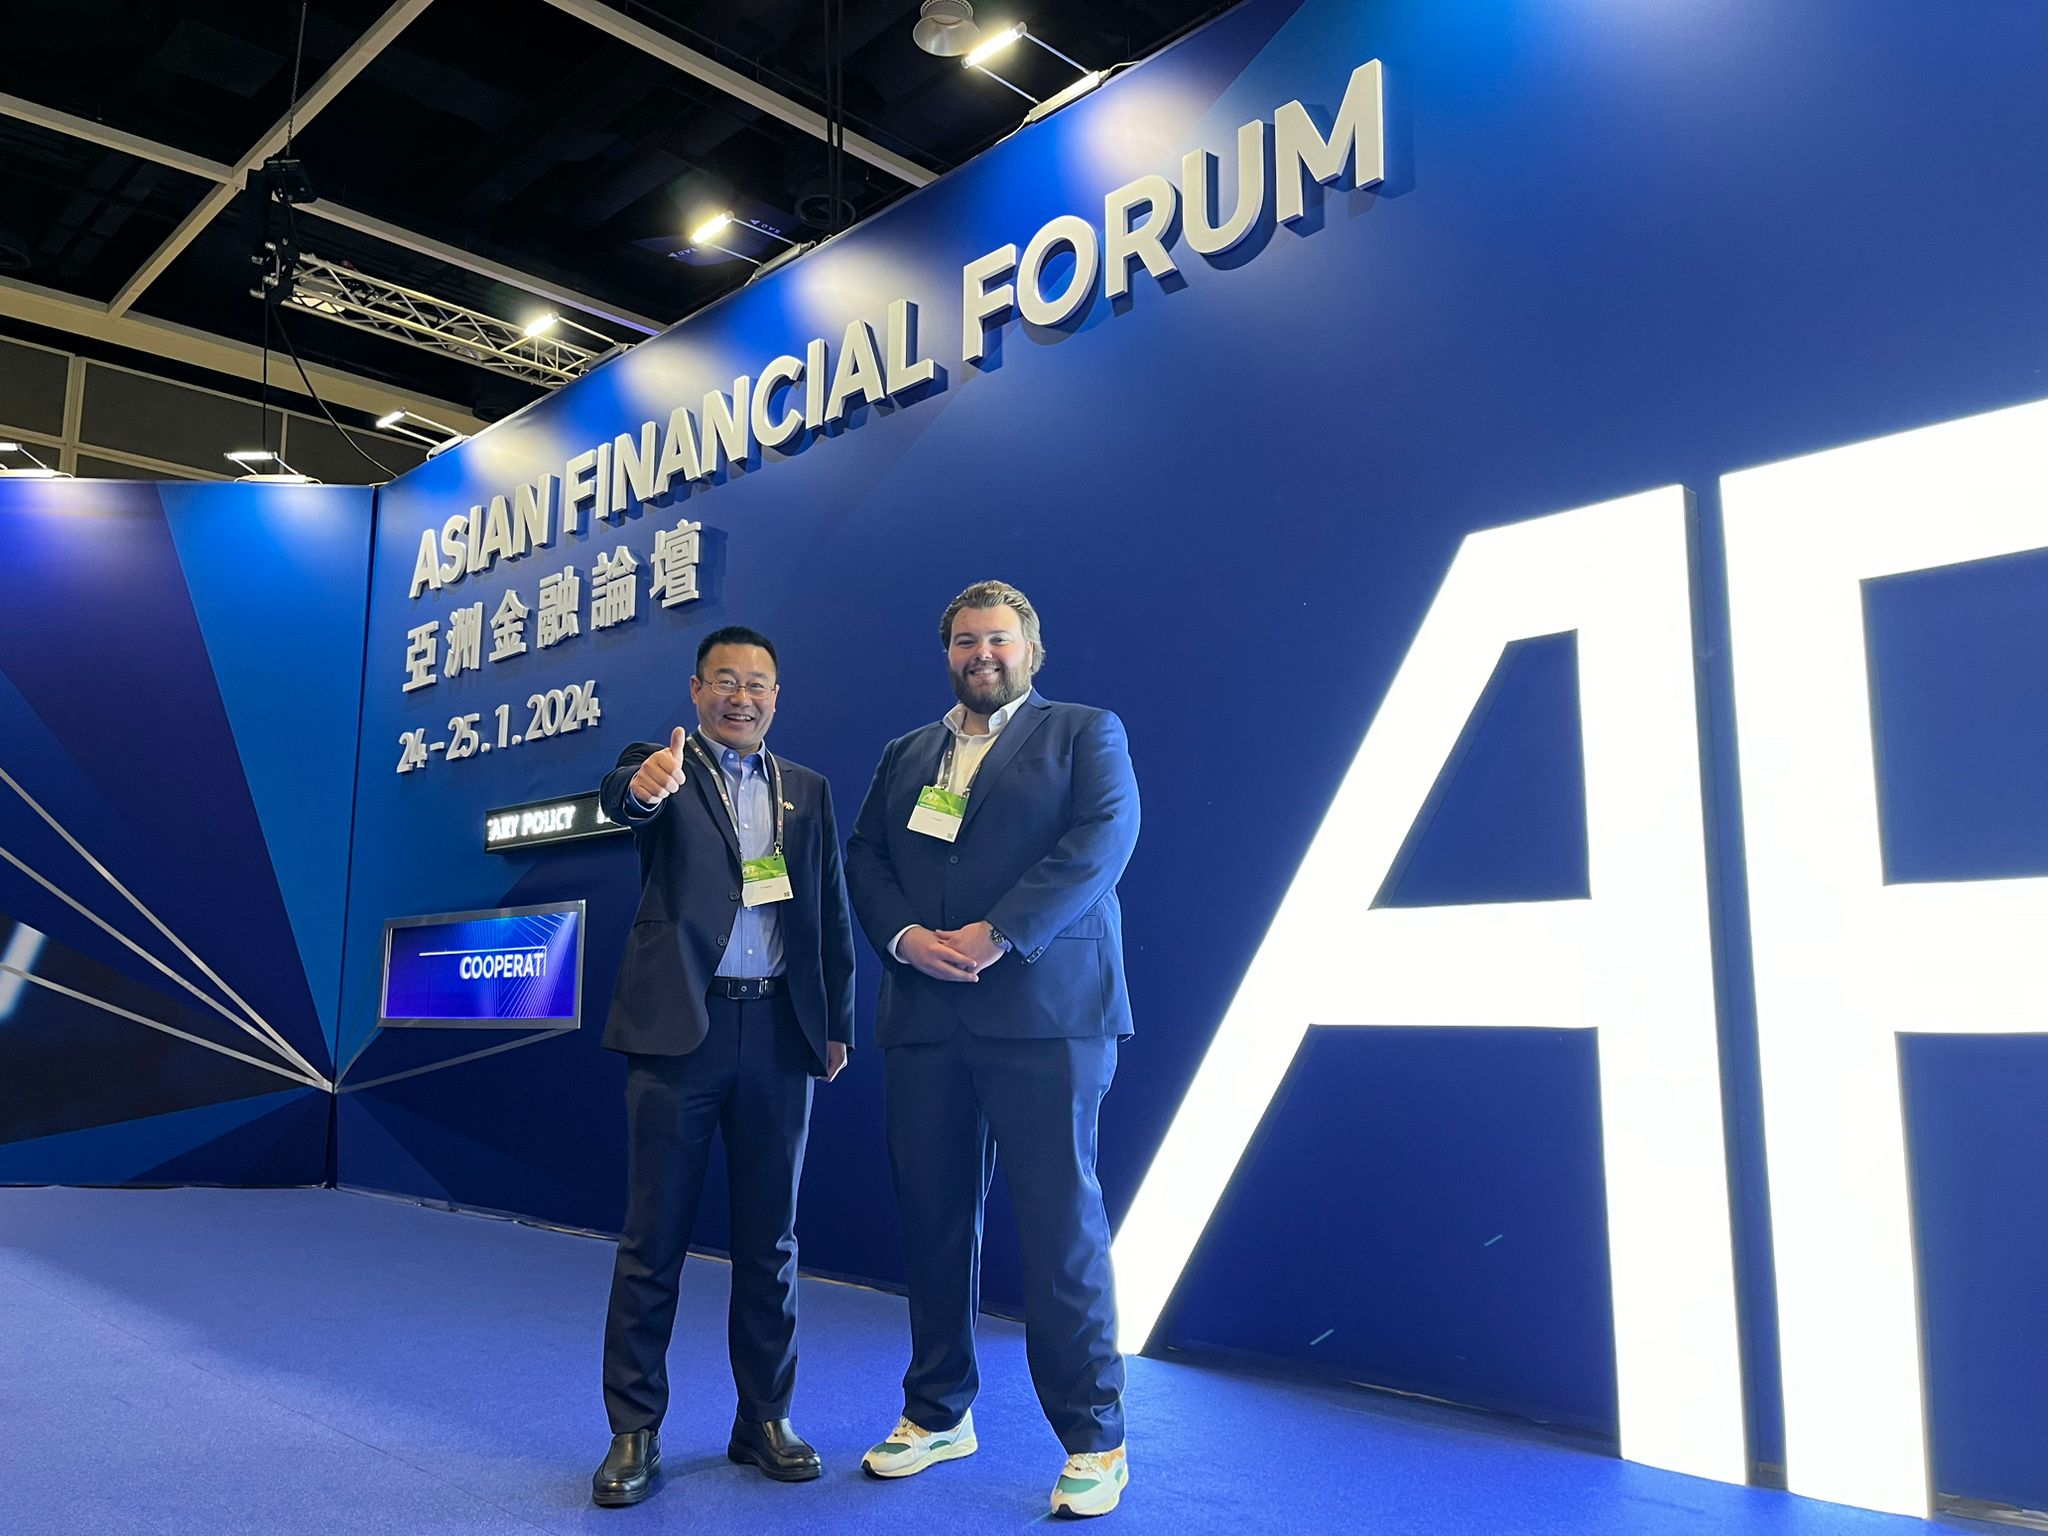 Jerry Asian Financial Forum